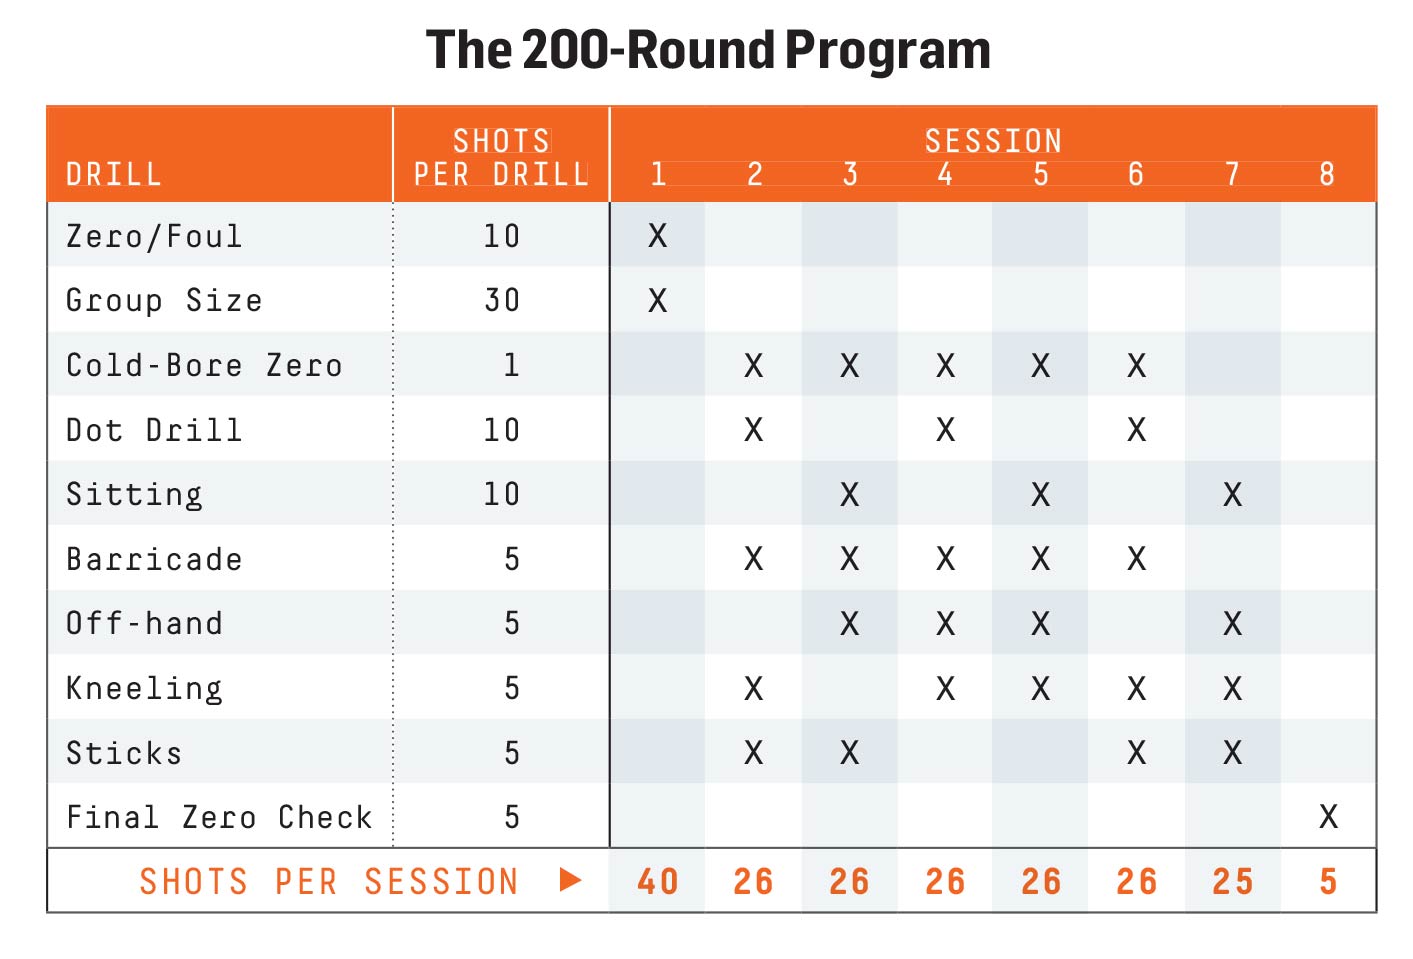 The 200-Round Program chart.